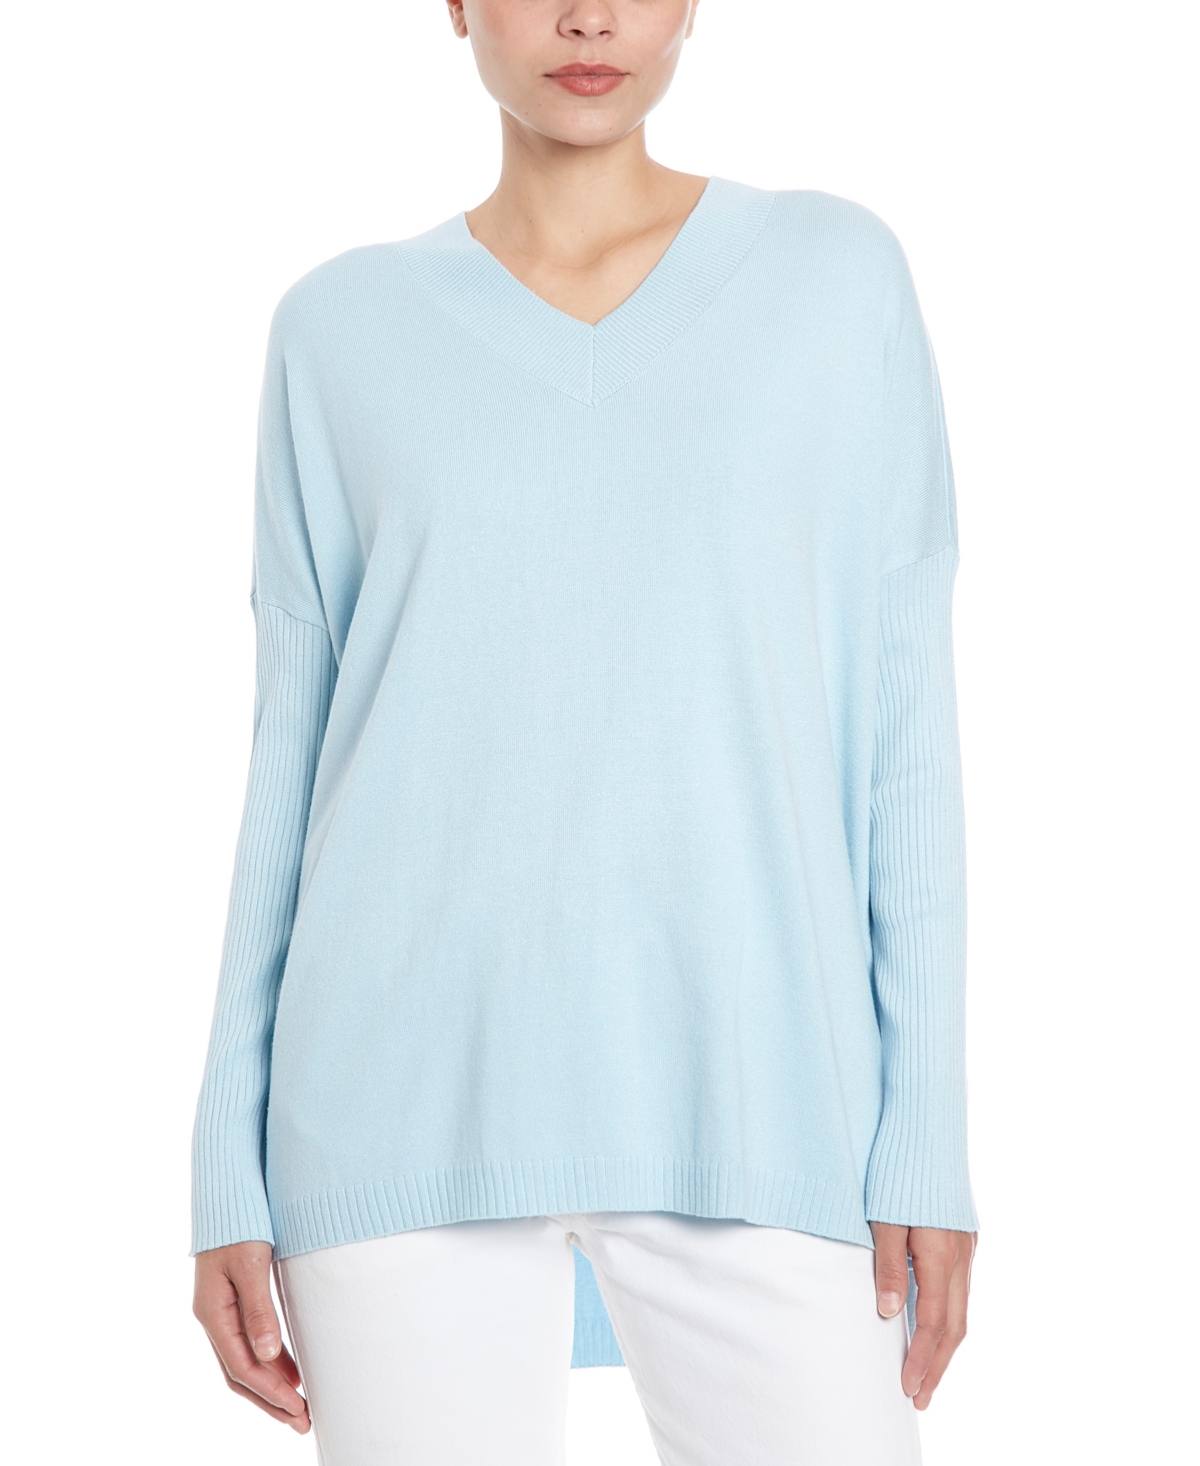 Women's V-neck Pullover Sweater - Ocean Mist